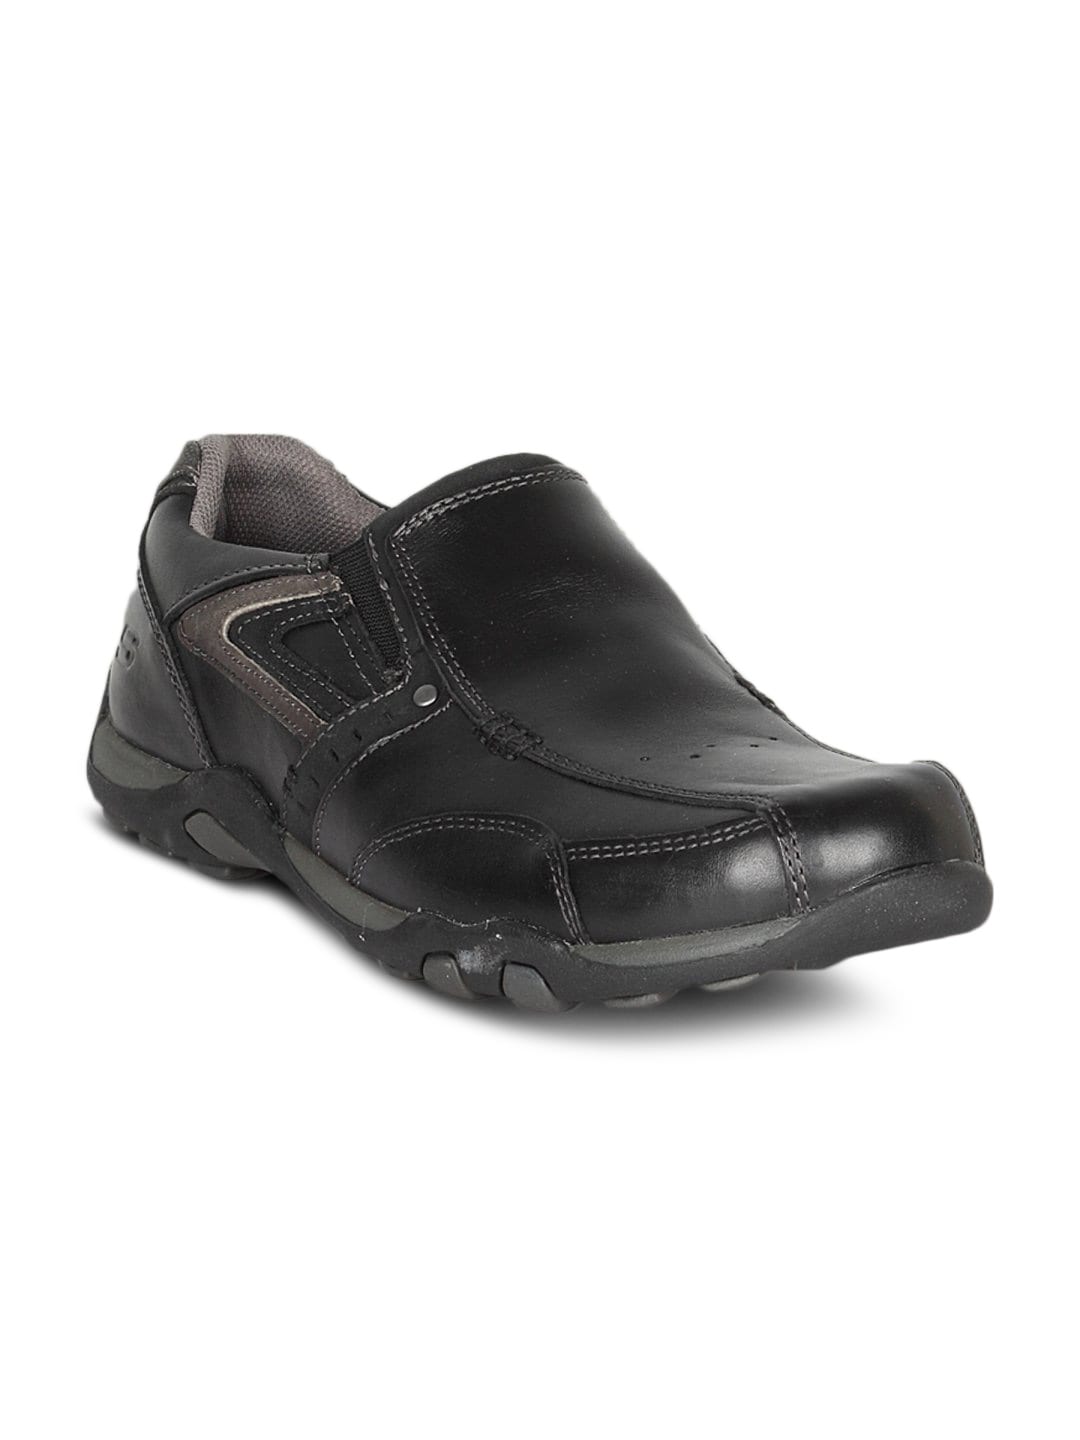 Skechers Men's Camaro Black Shoe